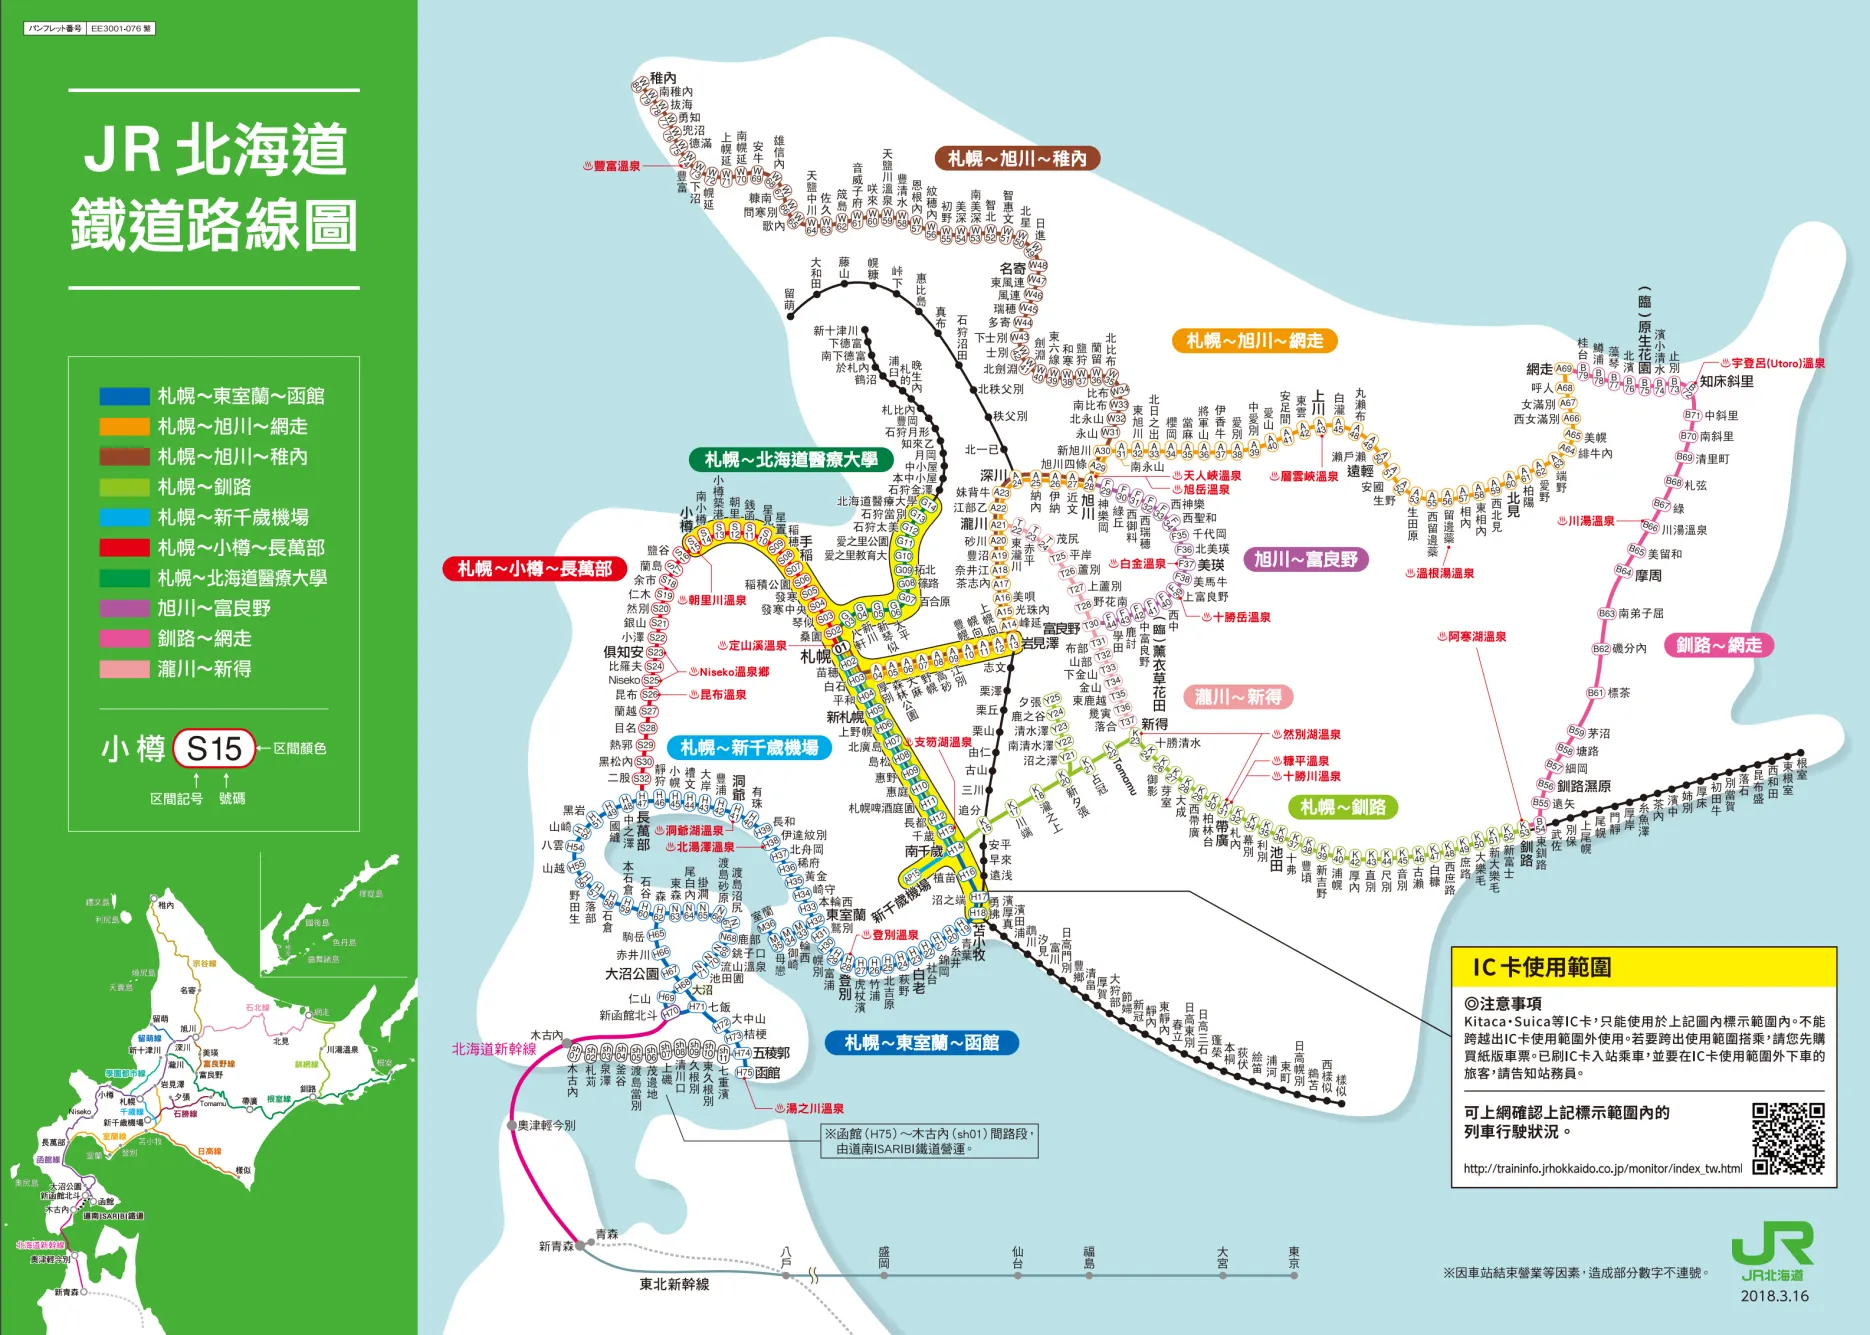 JR 北海道路線圖